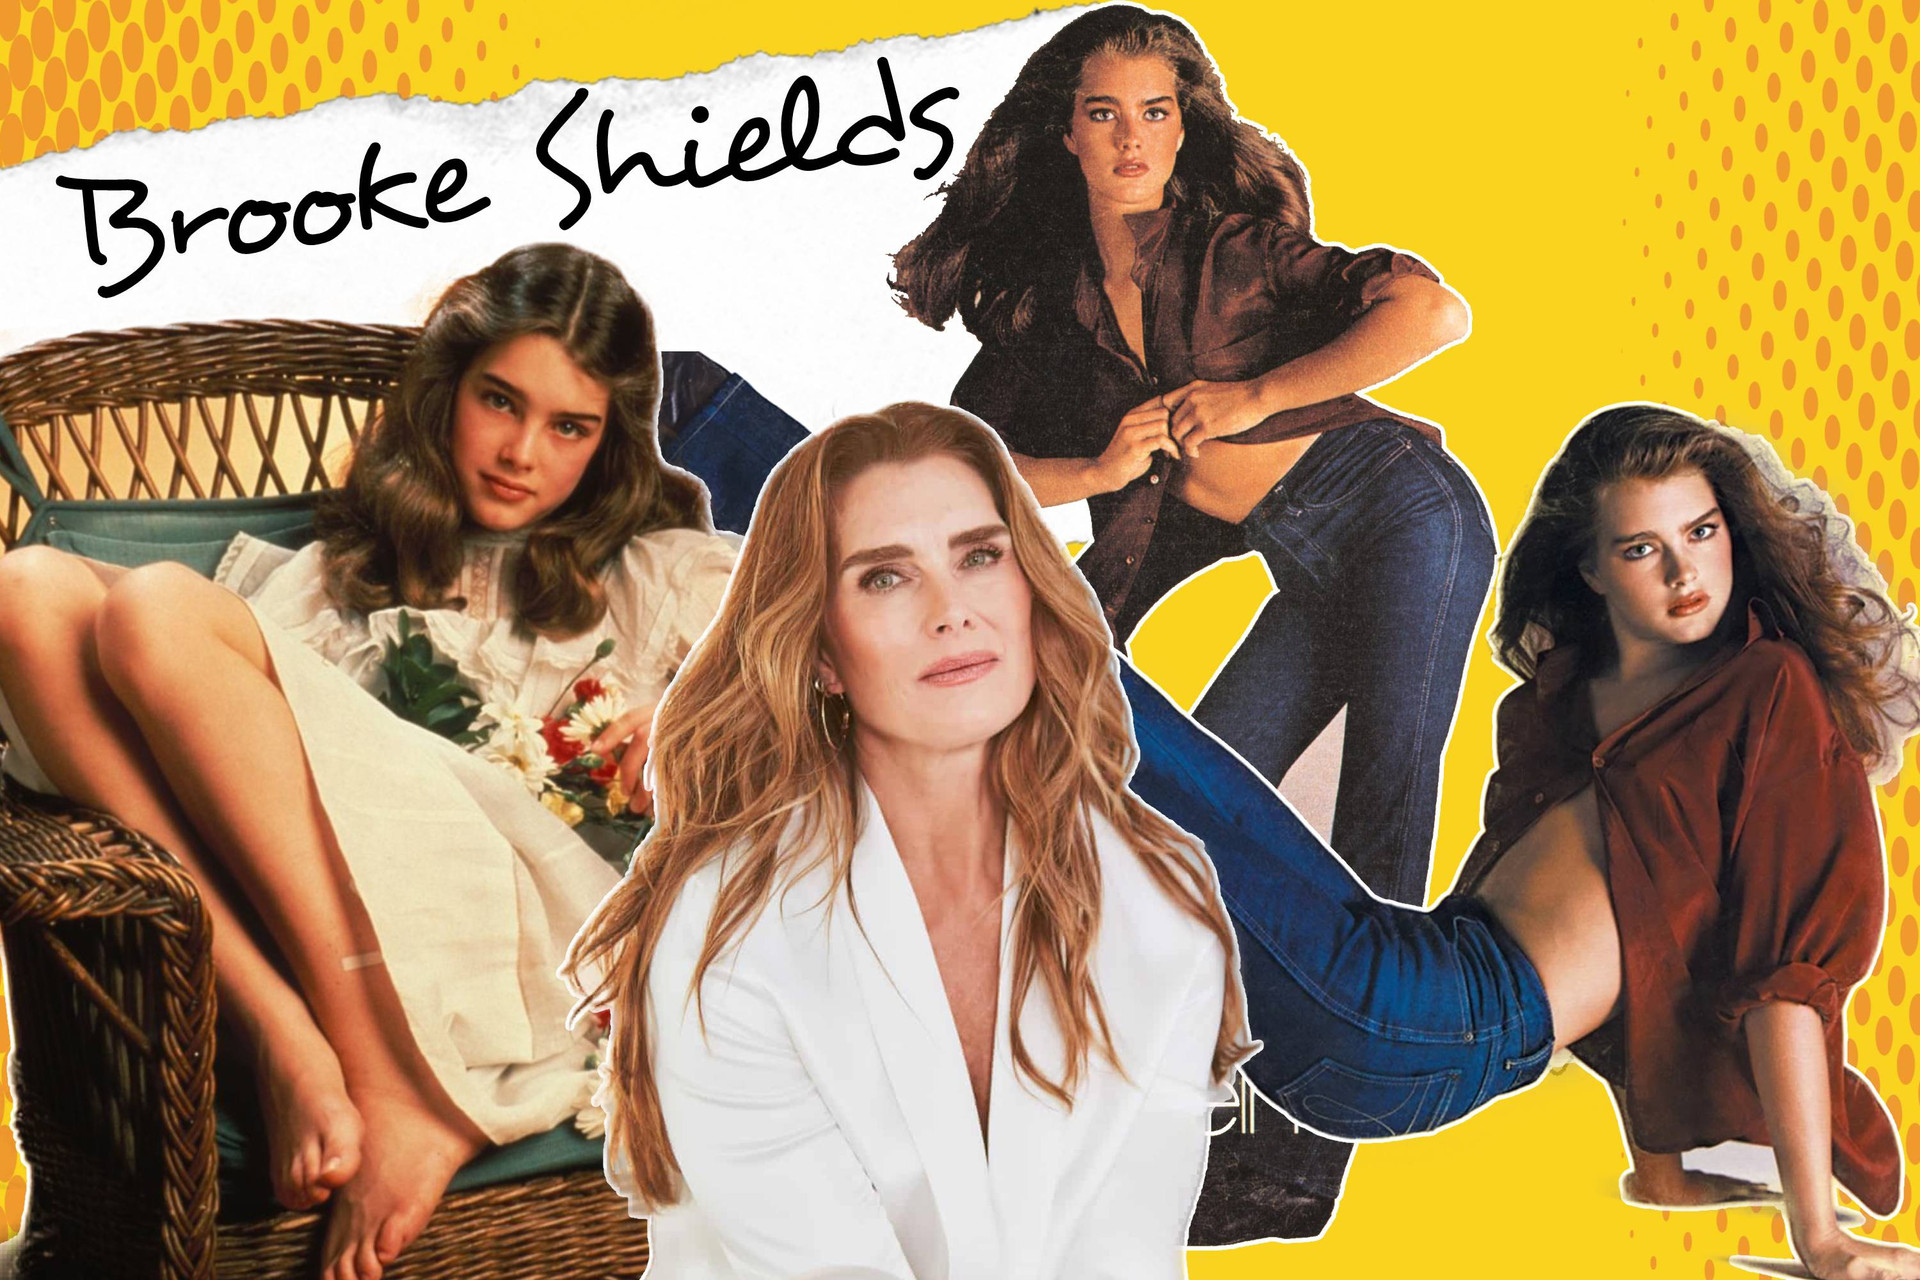 Người mẫu Brooke Shields bị ám ảnh suốt 40 năm vì cuộc phỏng vấn tàn nhẫn - 11